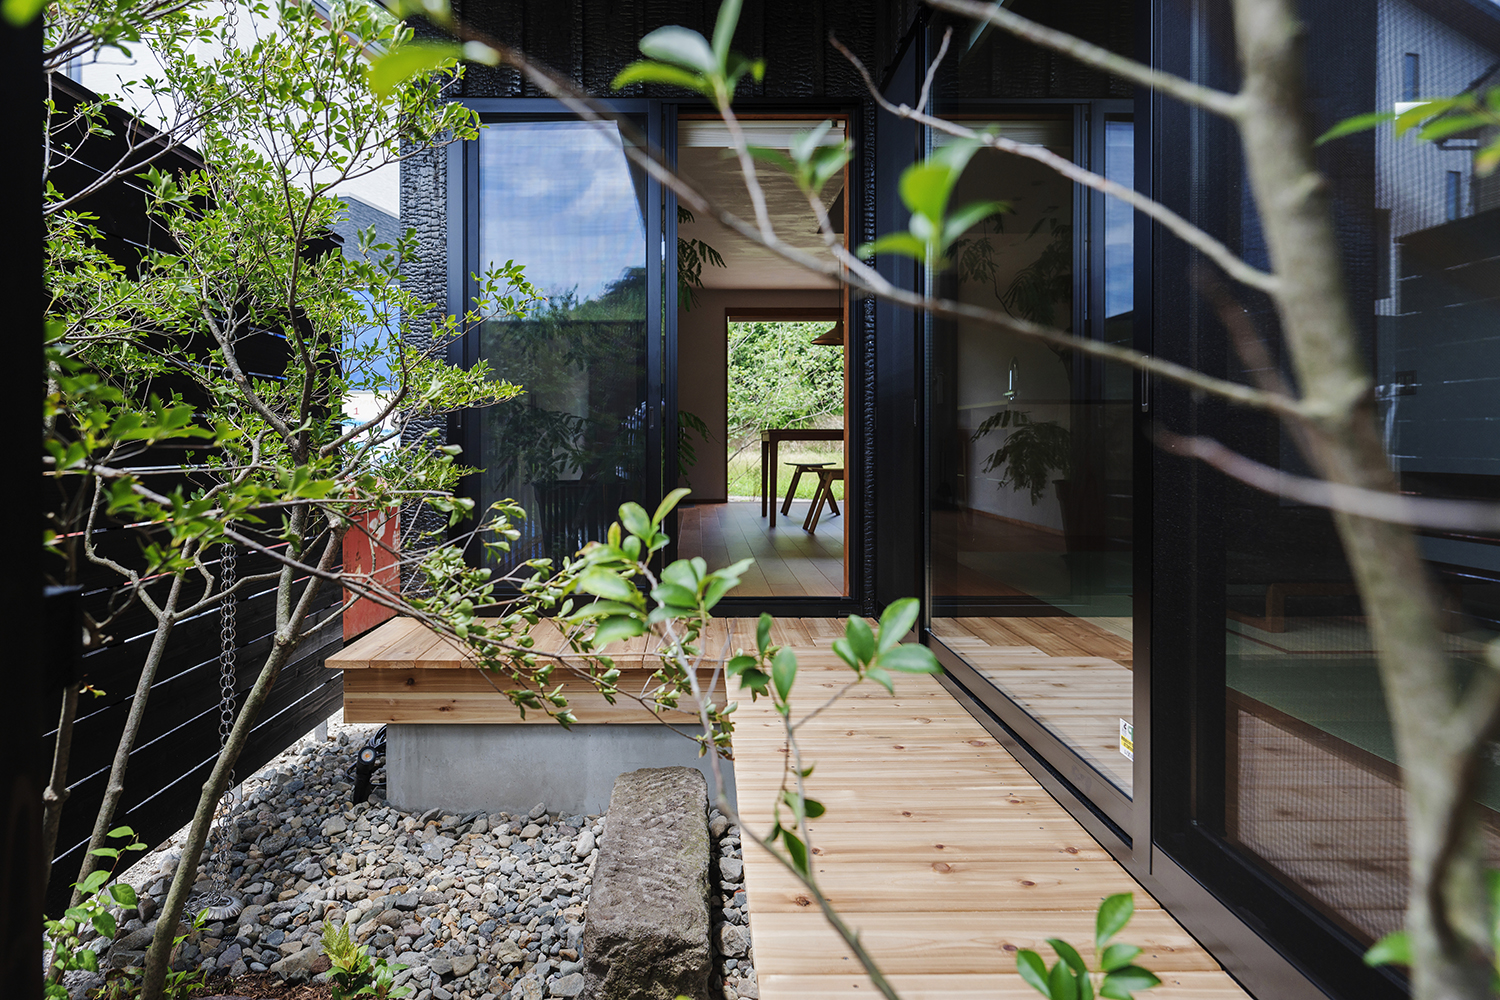 Khoảng sân bên trong nhà được thiết kế khép kín để bạn có thể thoải mái dạo bước giữa cây cối vươn mình trong nắng, nghỉ ngơi thư giãn mà không cần lo lắng đến sự riêng tư. 